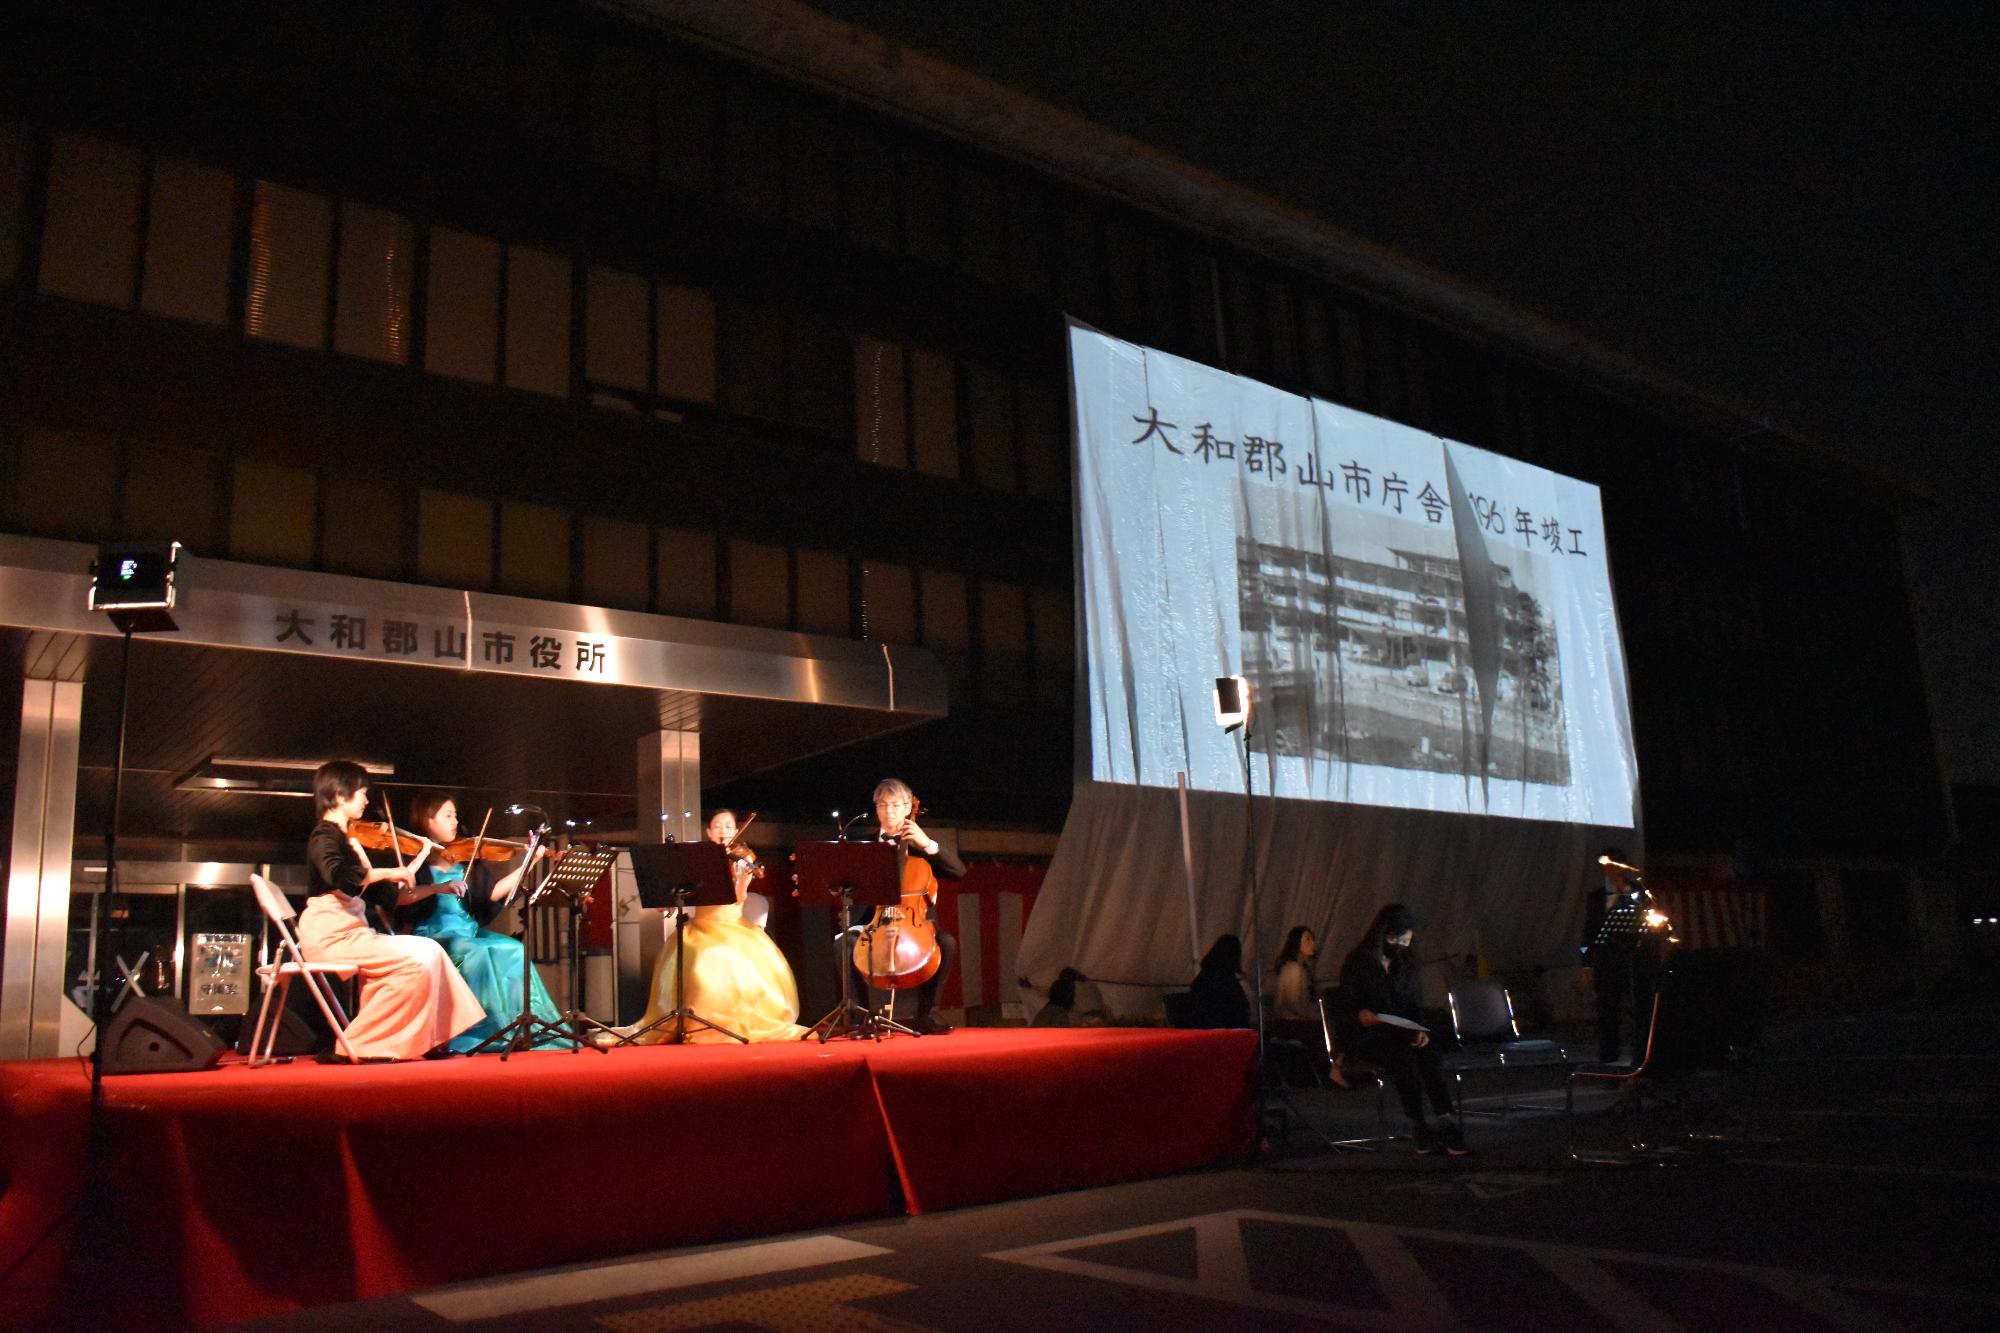 弦楽器を演奏する4人の奏者と旧庁舎に貼られたスクリーンに映し出される映像